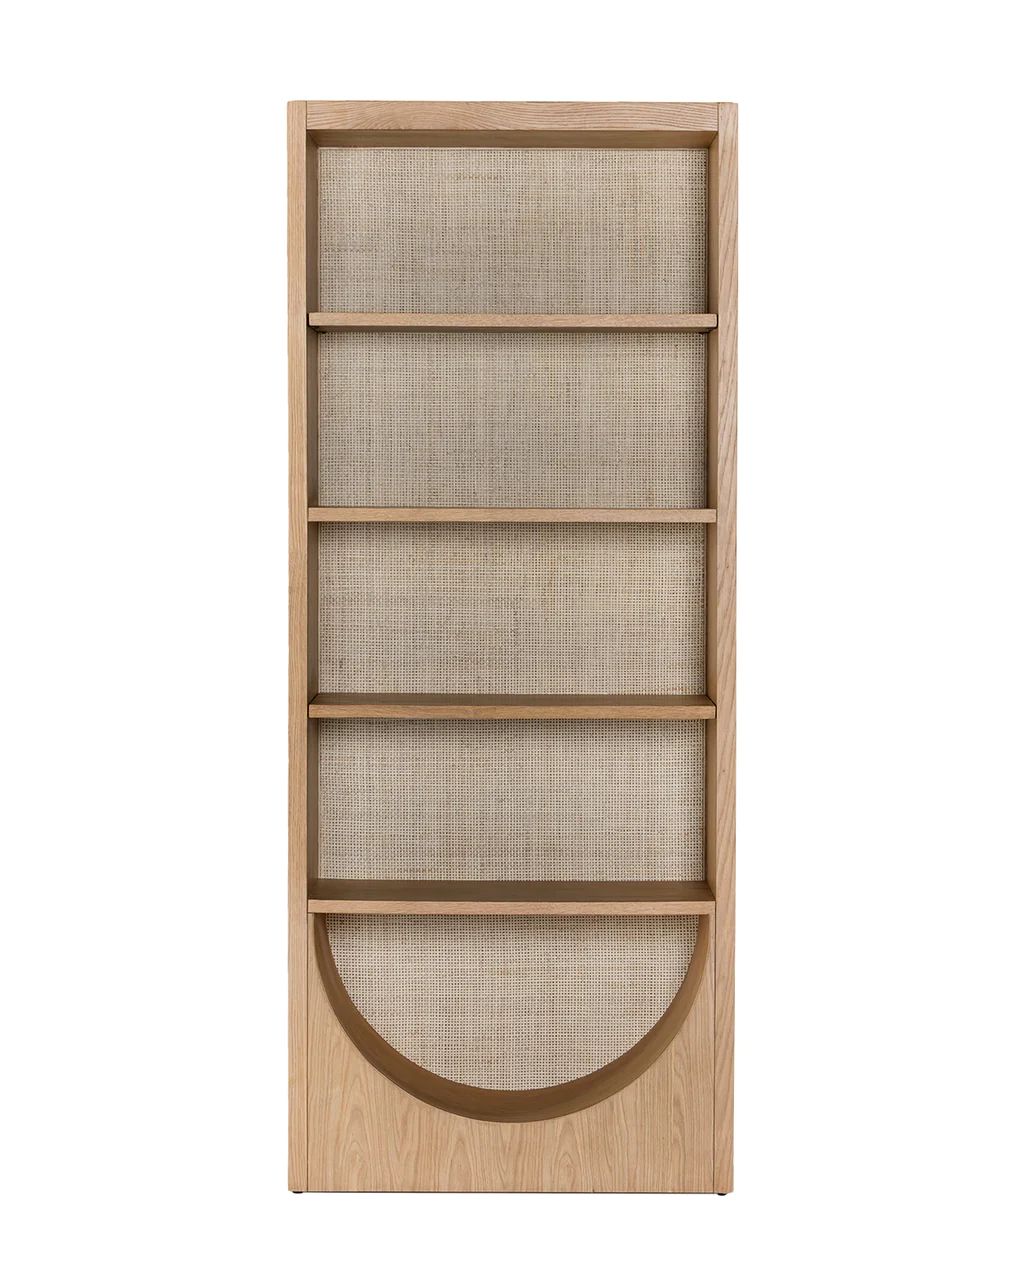 Losuna Bookcase | McGee & Co.